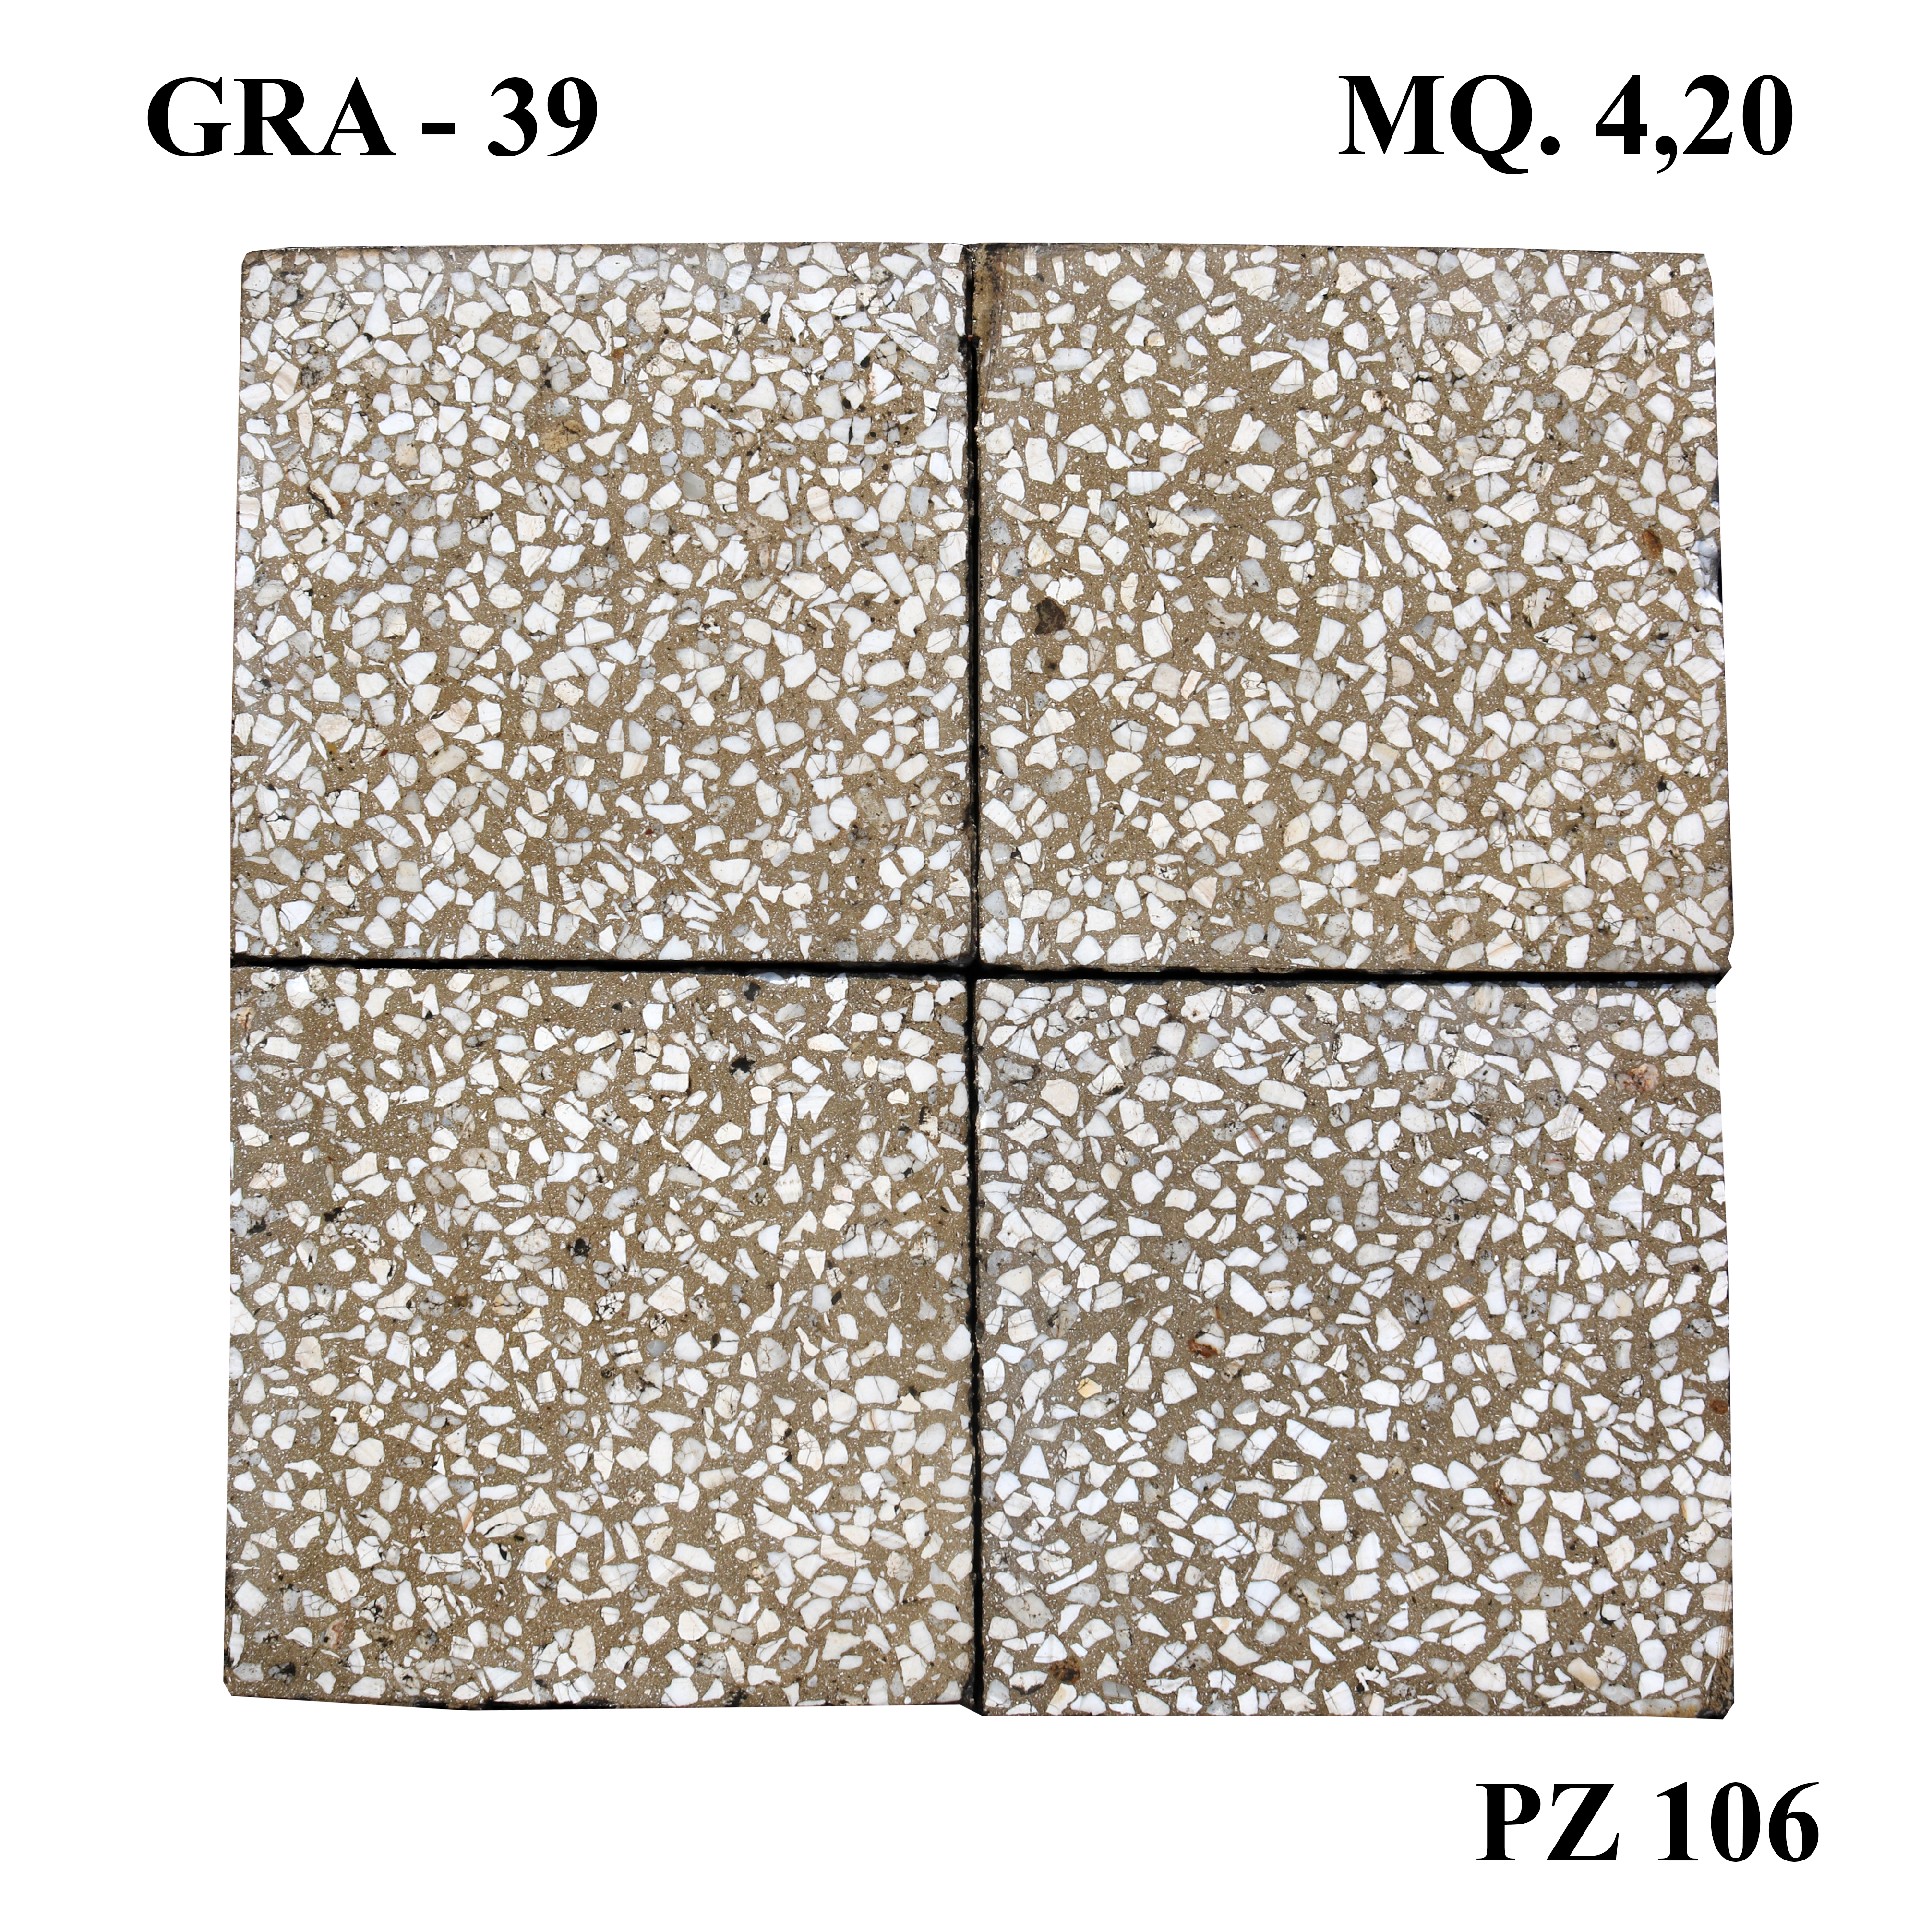 Antica pavimentazione in graniglia cm 20x20. - 1